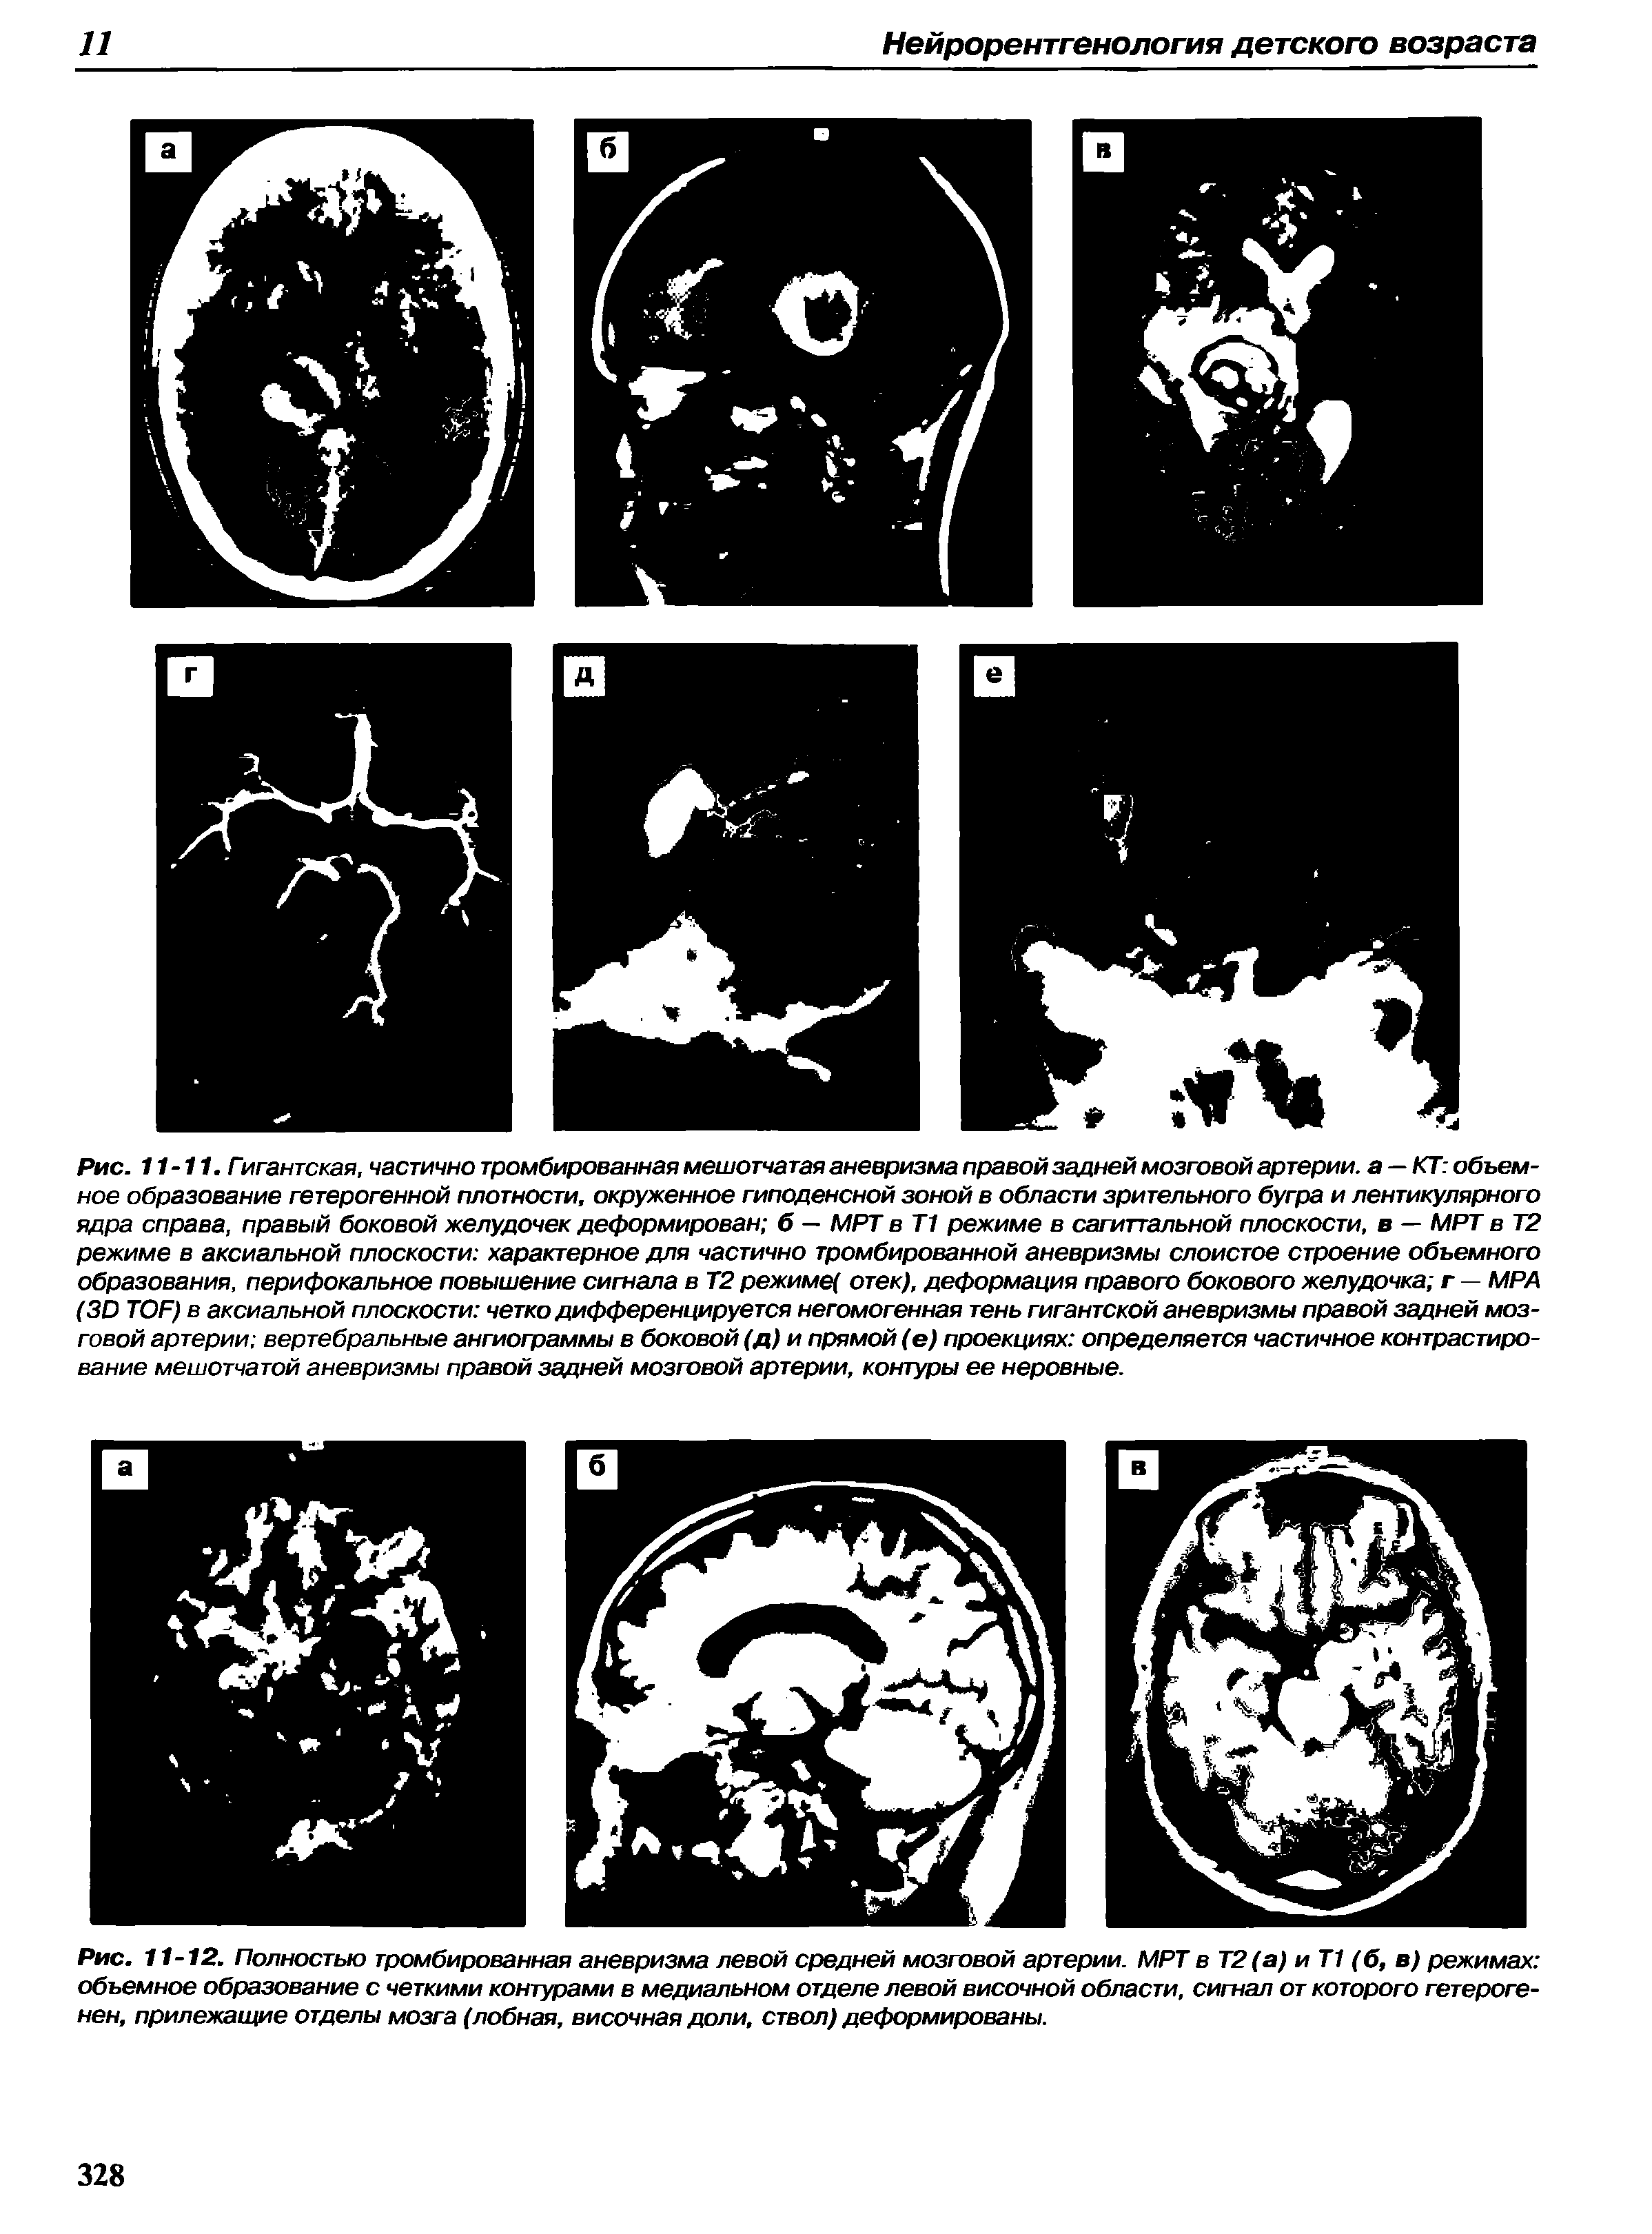 Рис. 11-12. Полностью тромбированная аневризма левой средней мозговой артерии. МРТ в Т2(а) и Т1 (б, в) режимах объемное образование с четкими контурами в медиальном отделе левой височной области, сигнал от которого гетероге-нен, прилежащие отделы мозга (лобная, височная доли, ствол) деформированы.